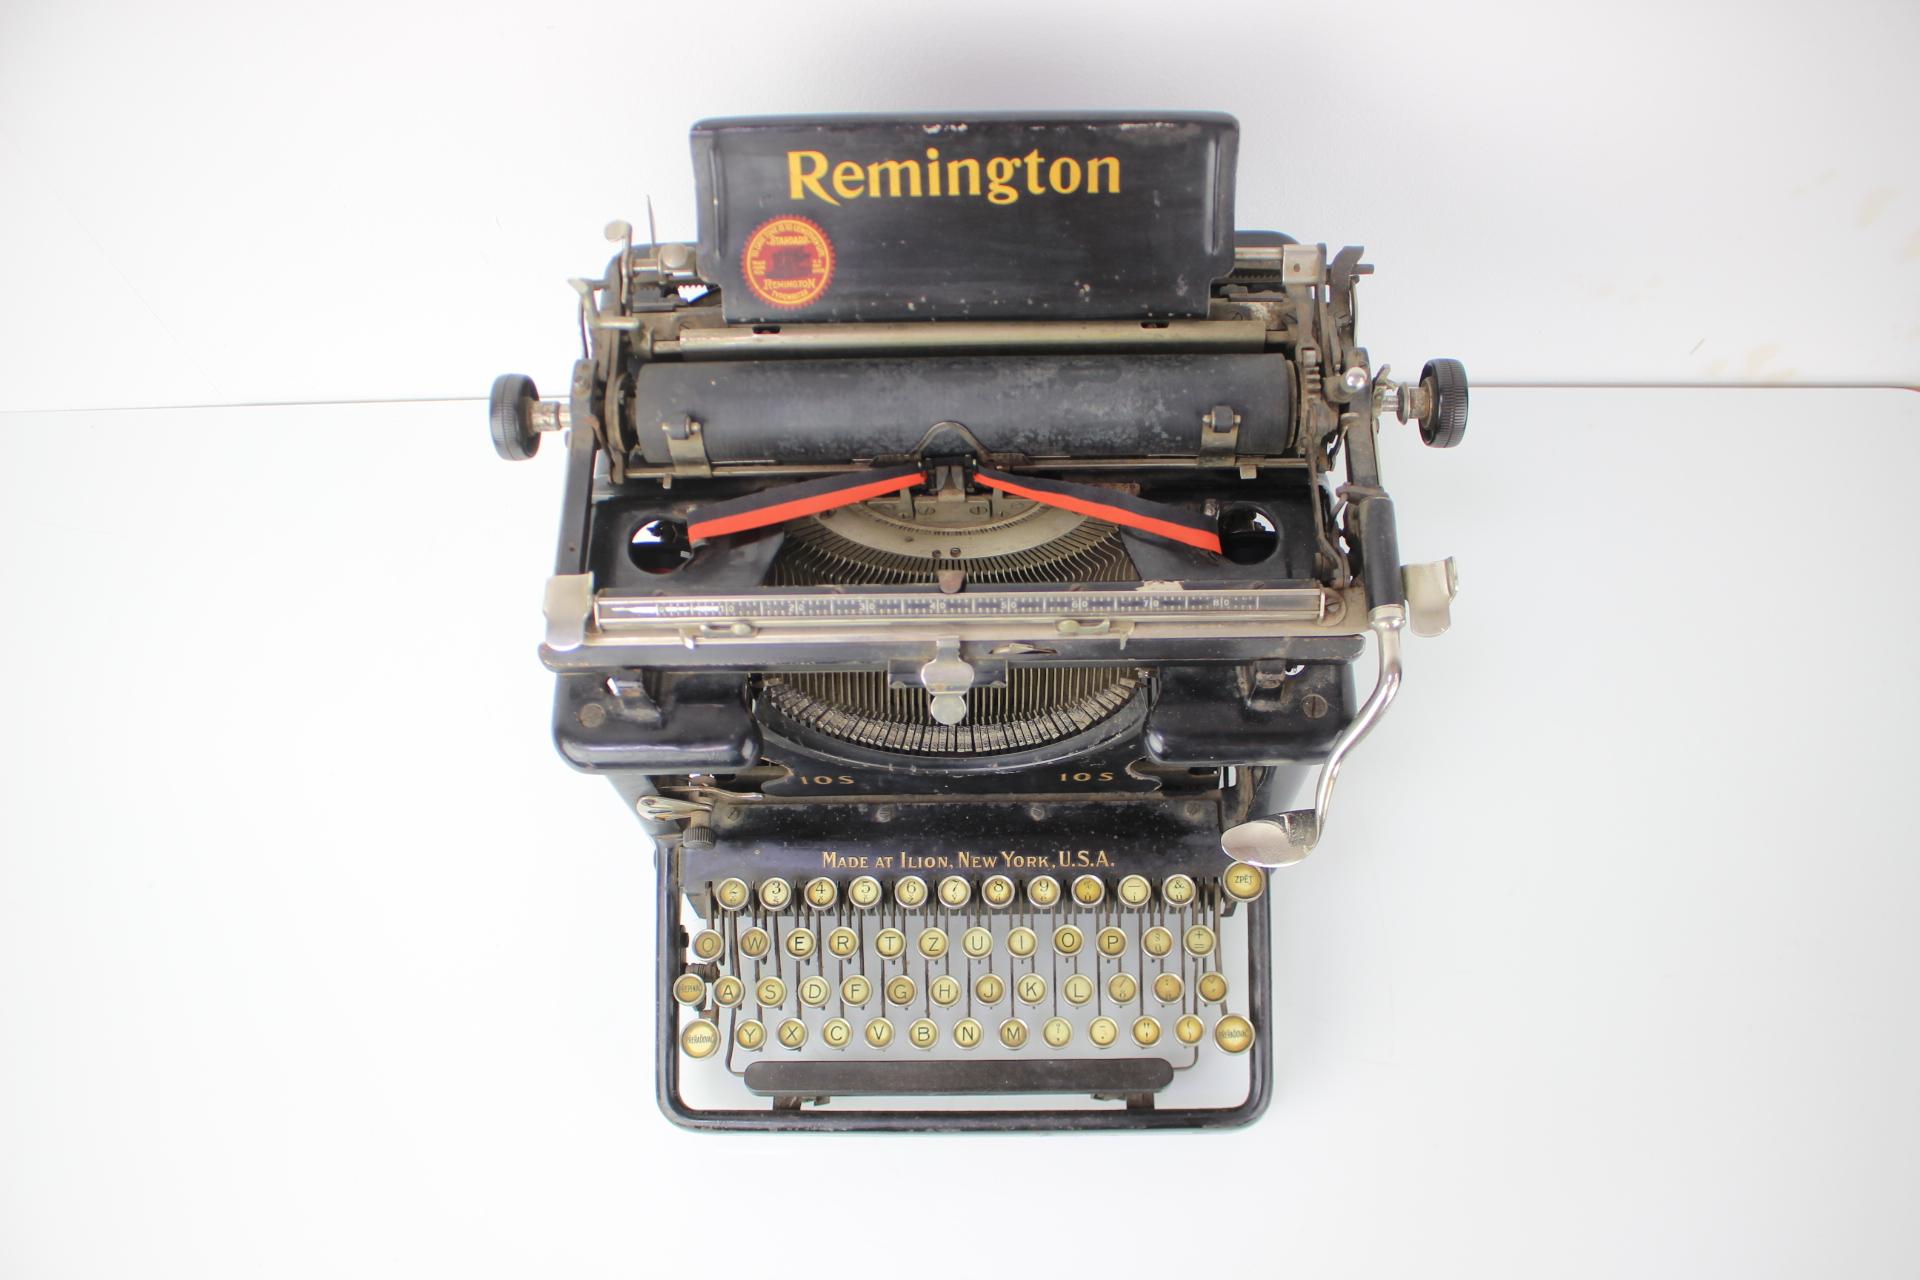 1920s remington typewriter